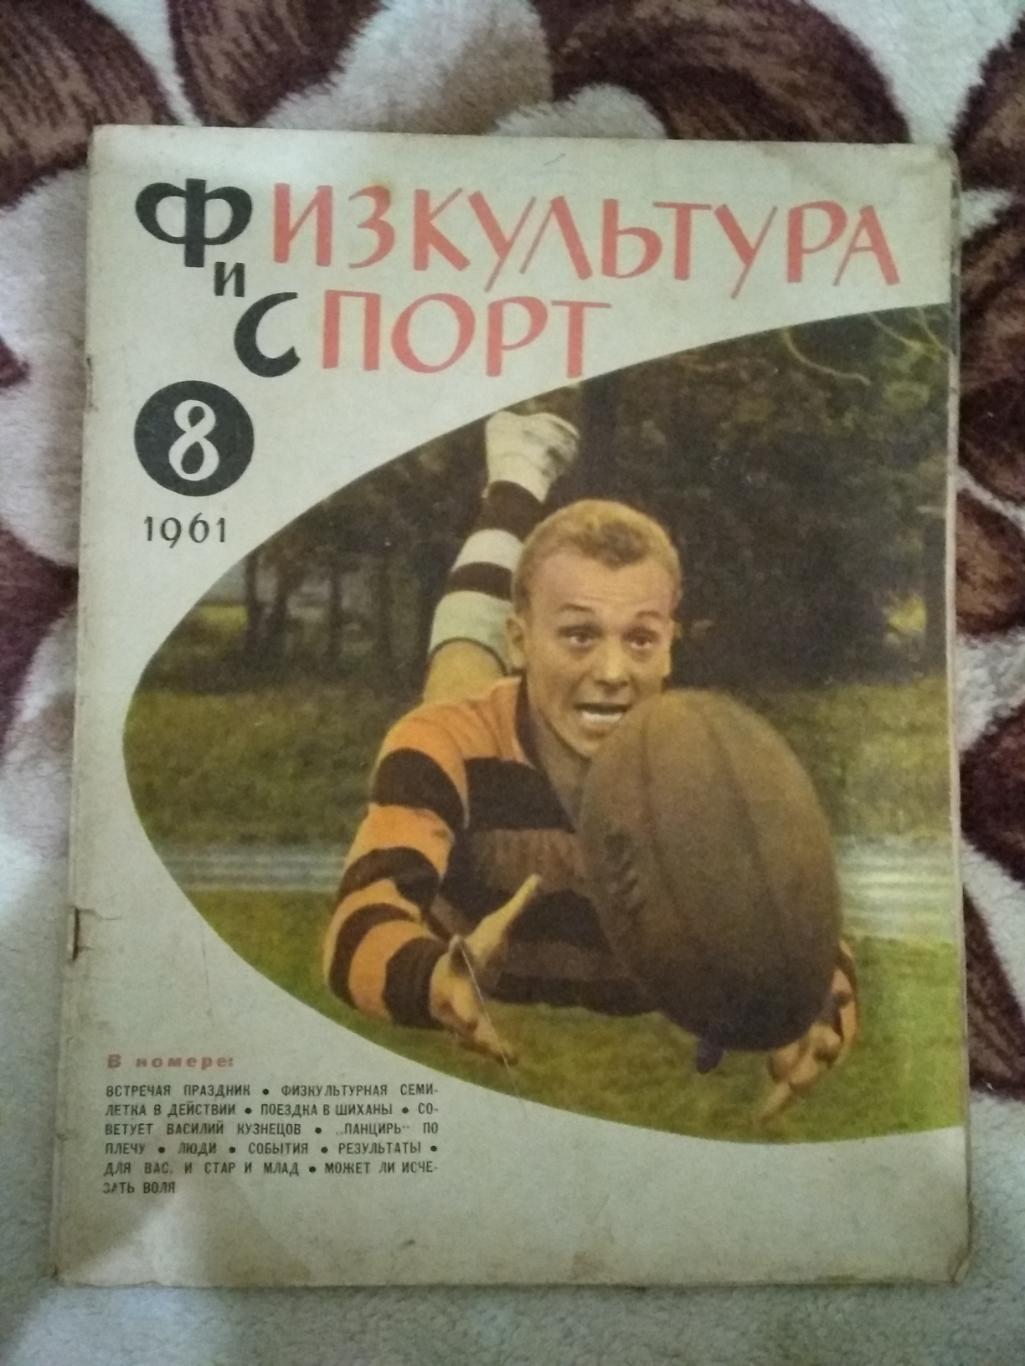 Журнал.Физкультура и спорт № 8 1961 г. (ФиС).